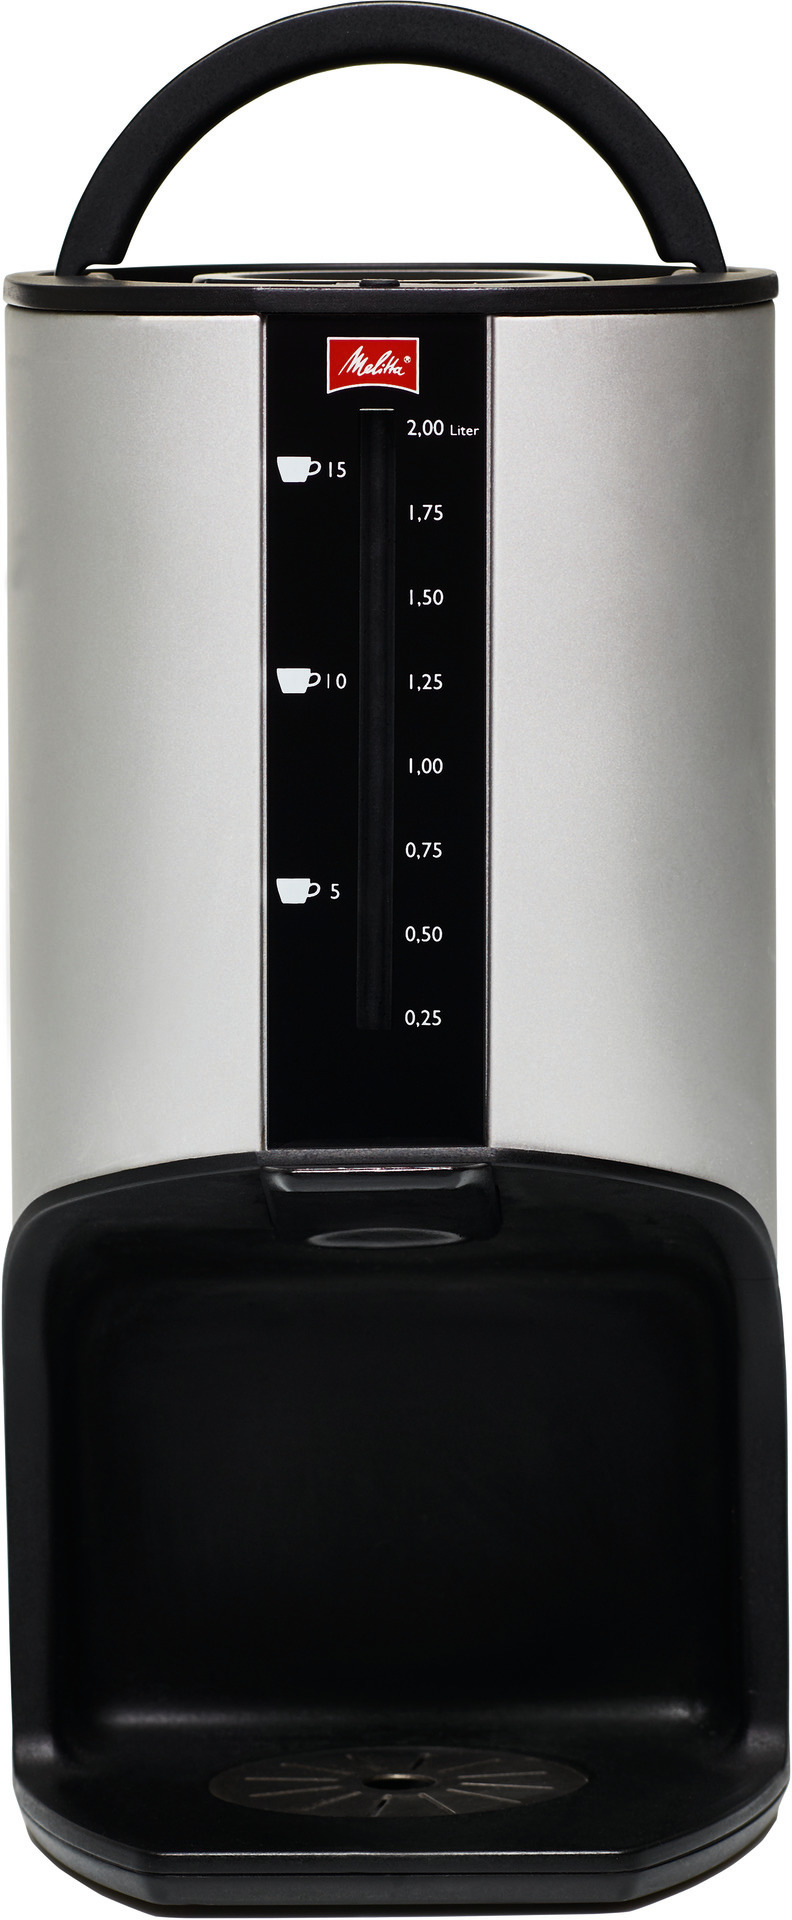 Thermobehälter XT Coffee Carrier 2,00 l / bis zu 15 Tassen